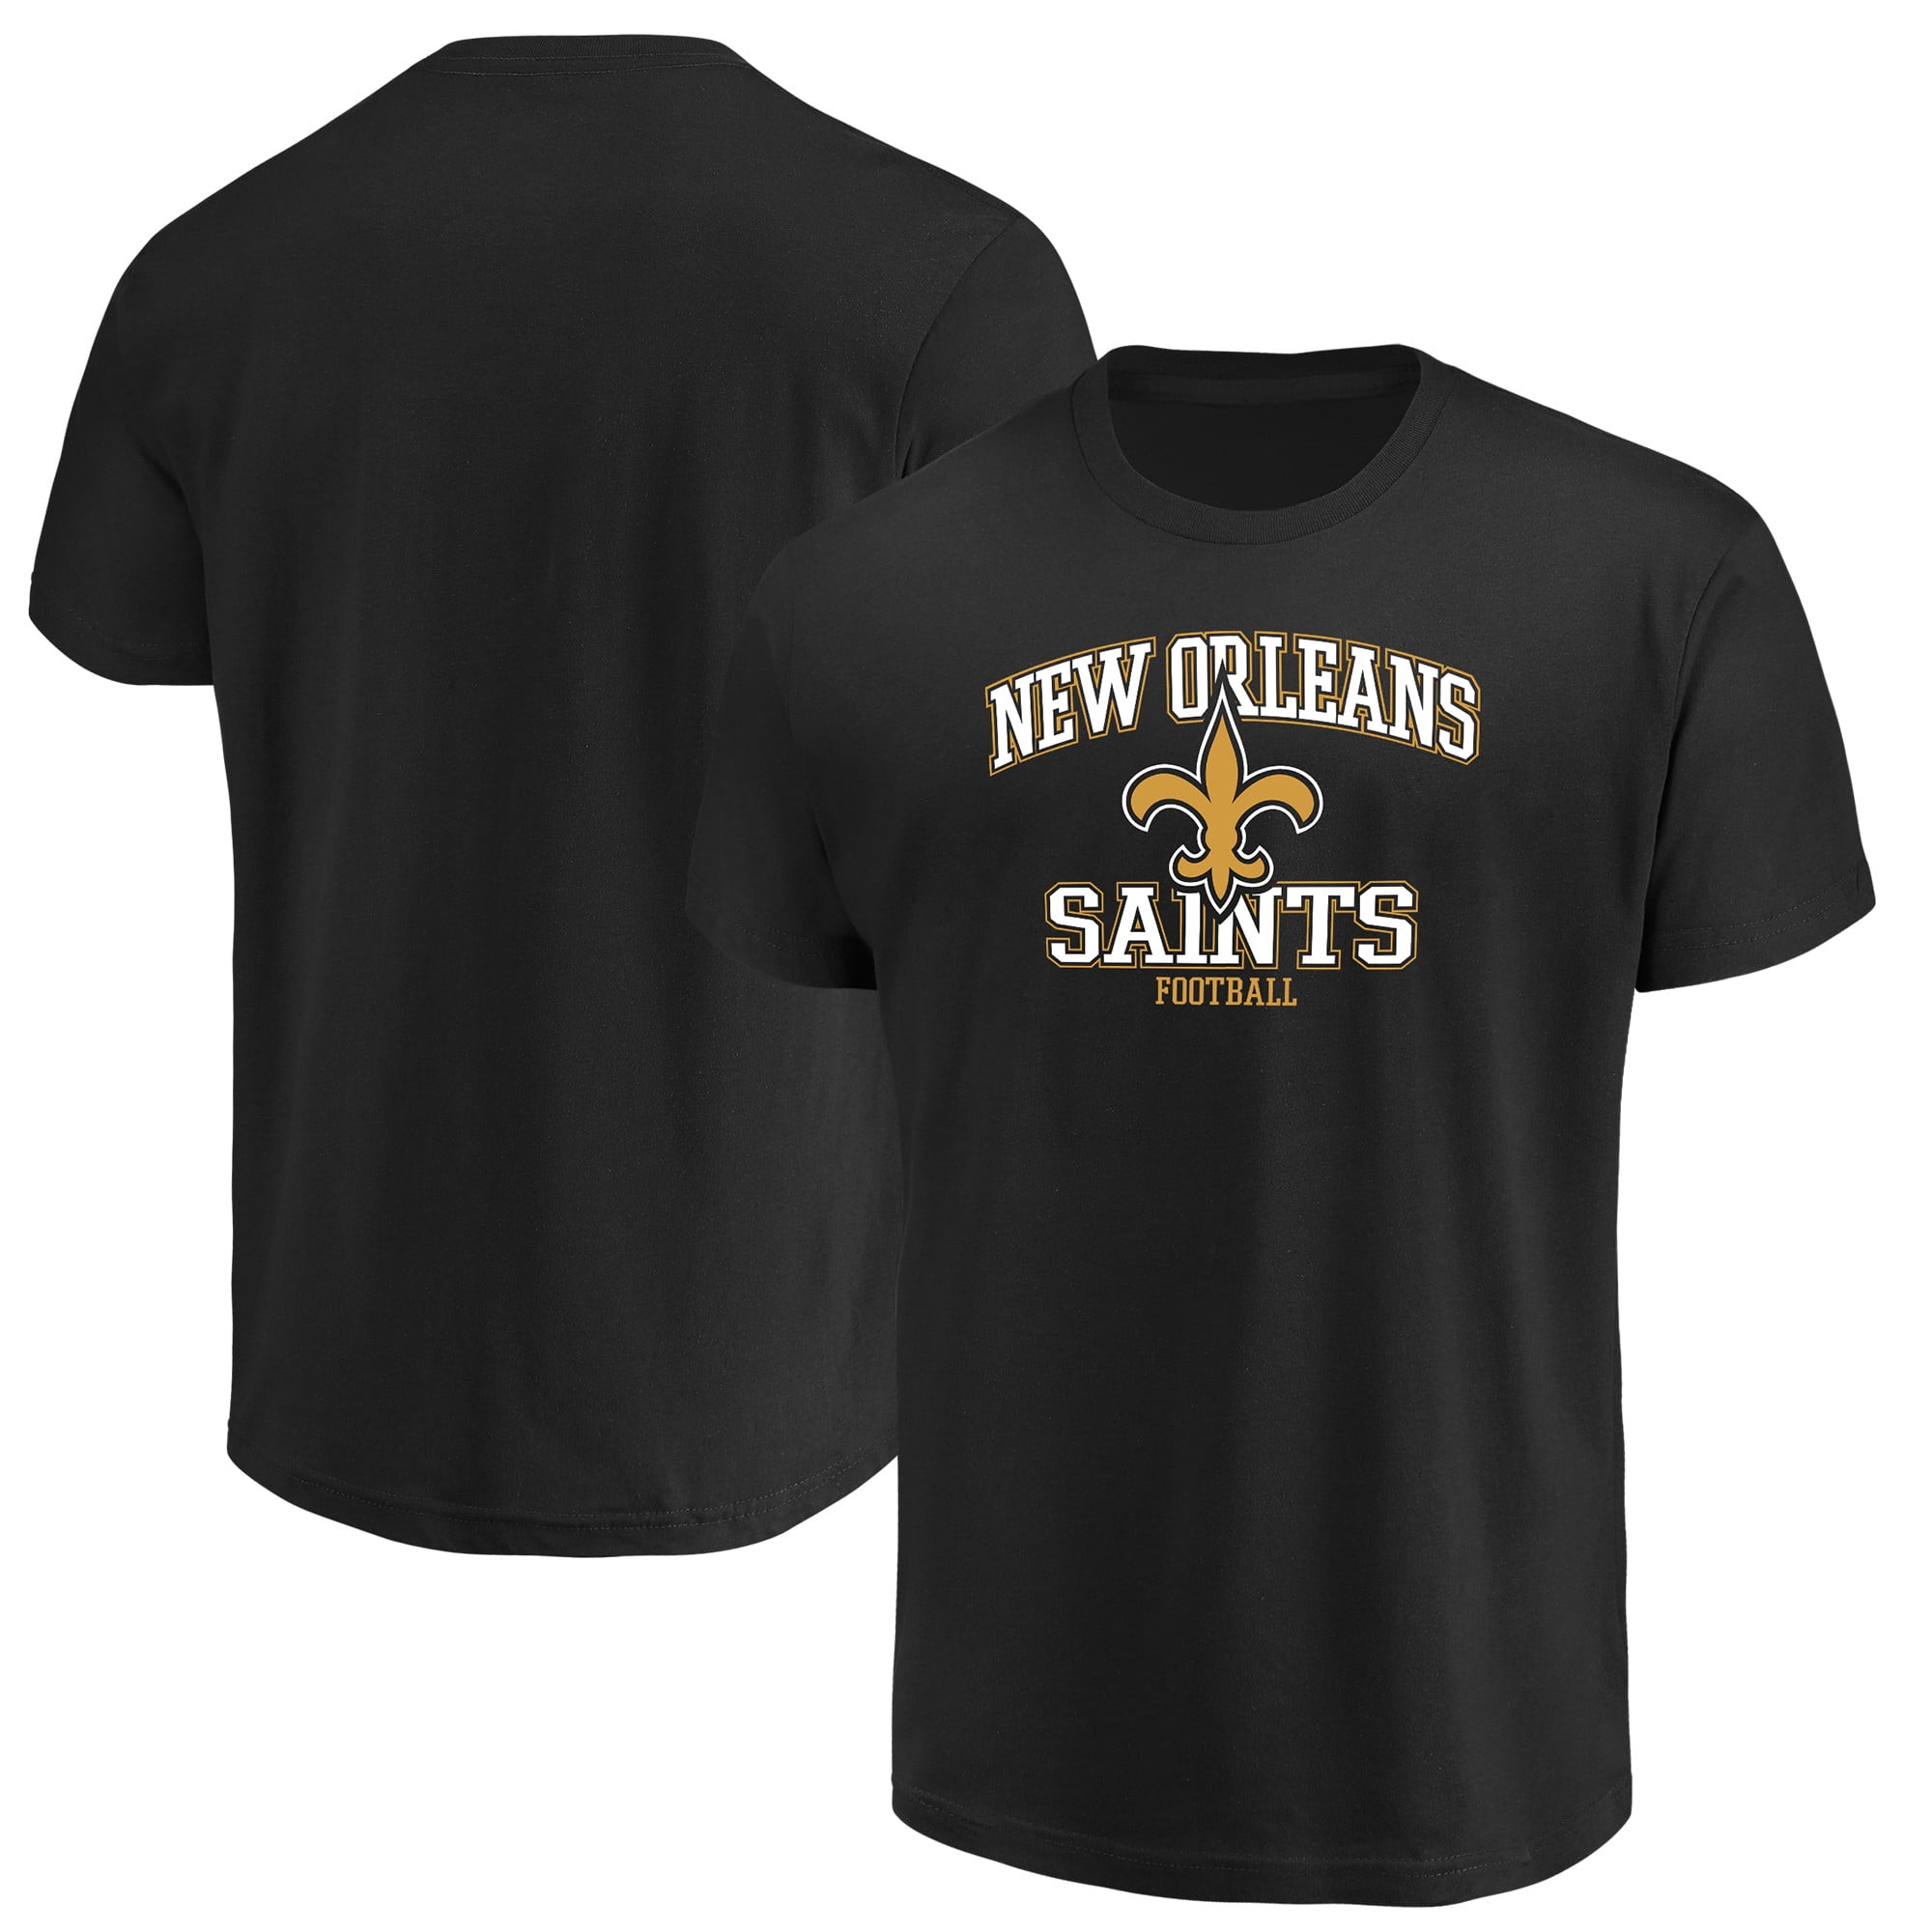 New Orleans Saints Team Shop - Walmart.com